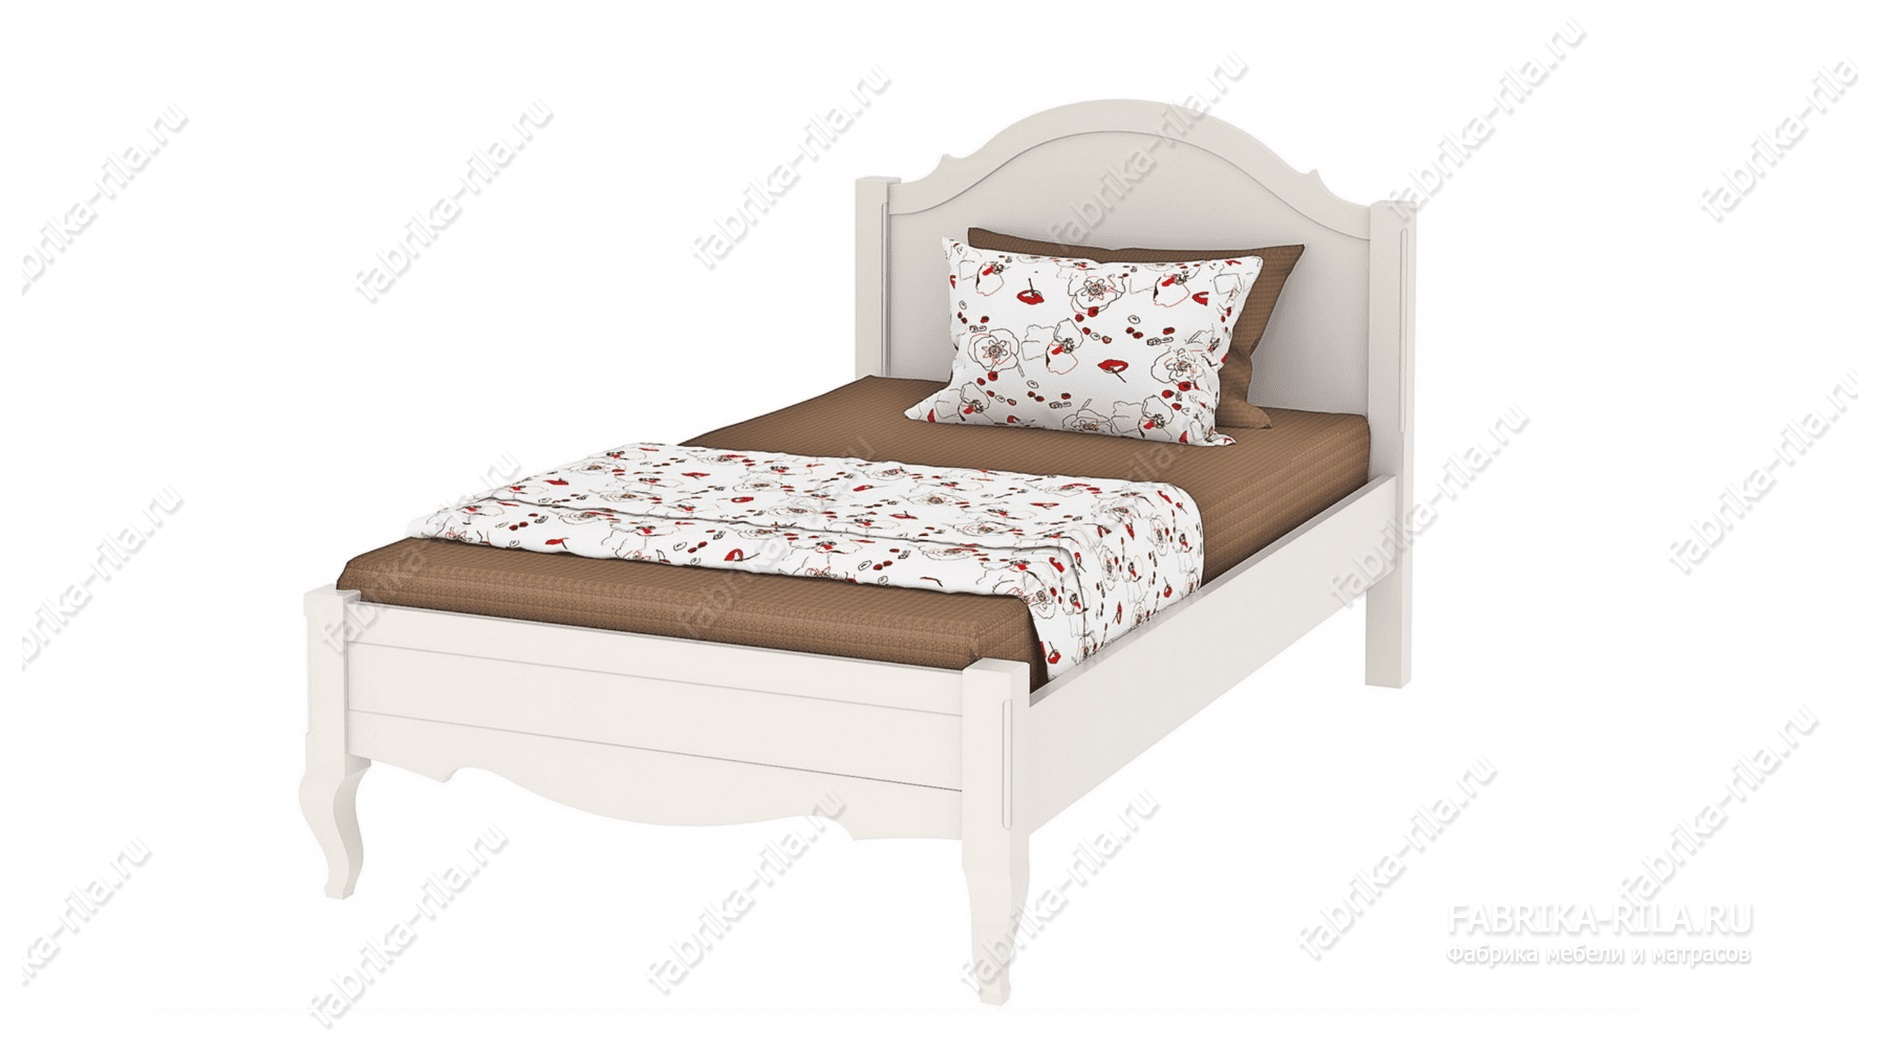 Кровать Palmira-1 — 90x190 см. из ясеня